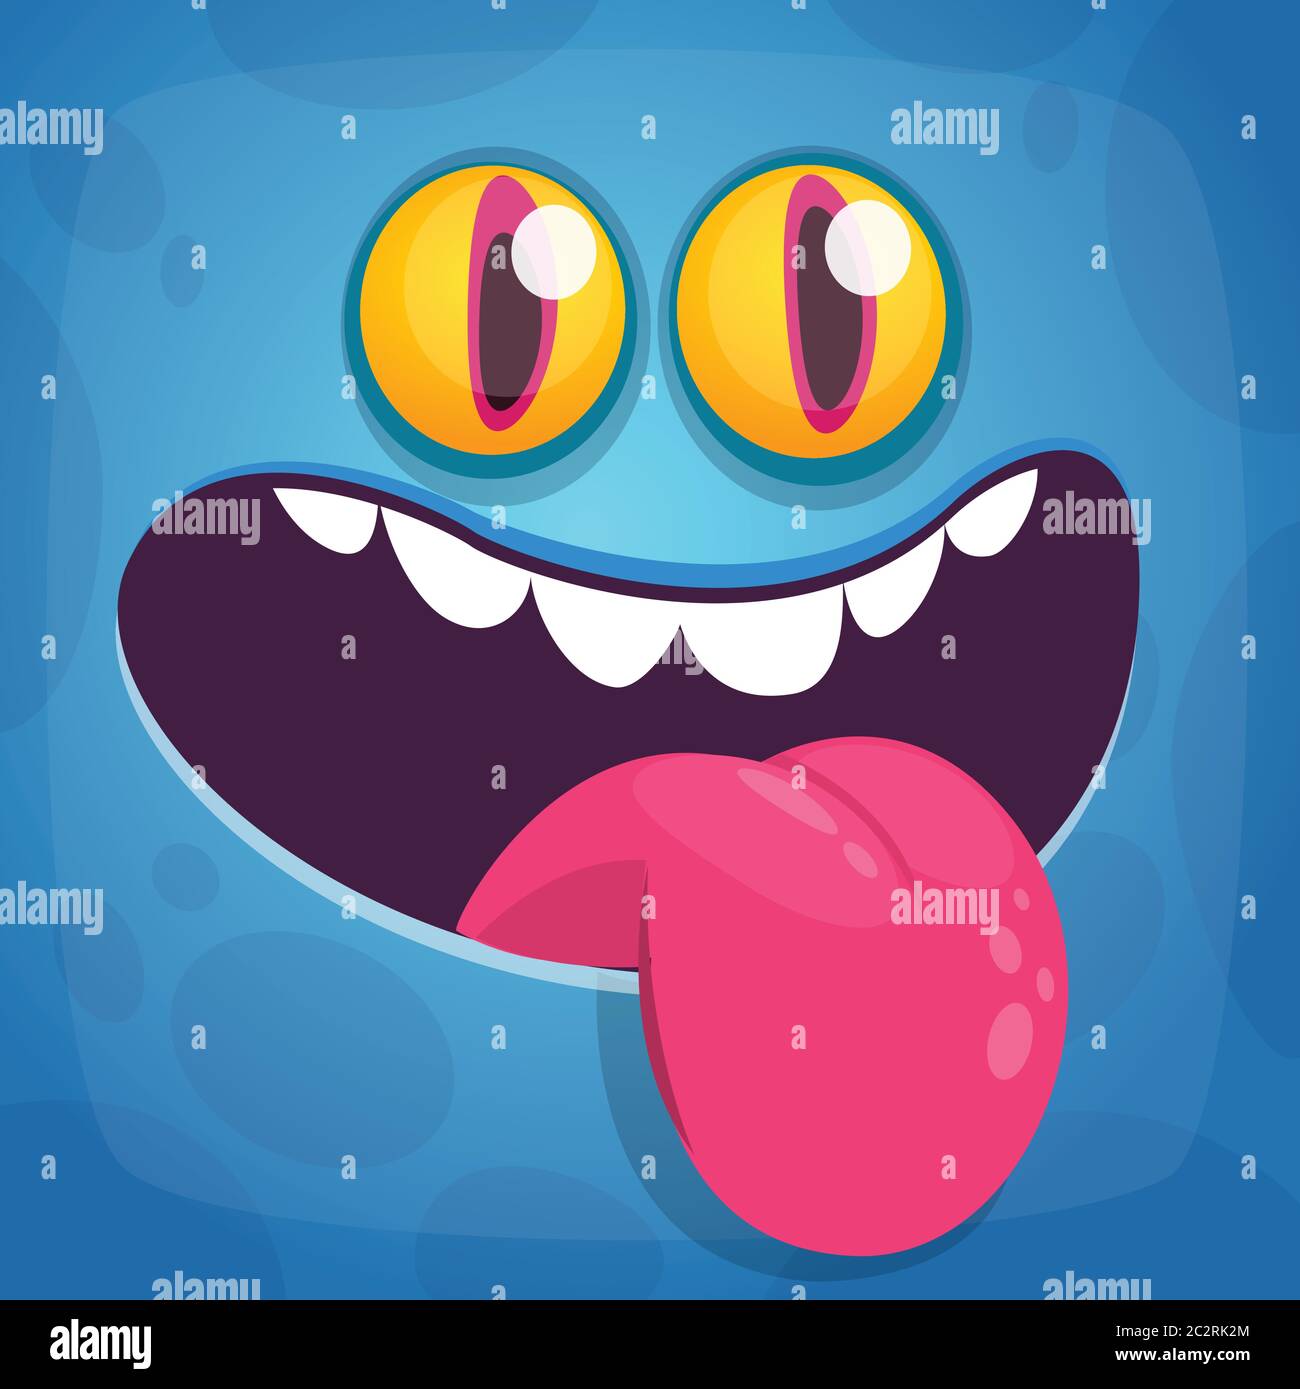 Catalog Avatar Creator: Mascot Silly Tongue Face